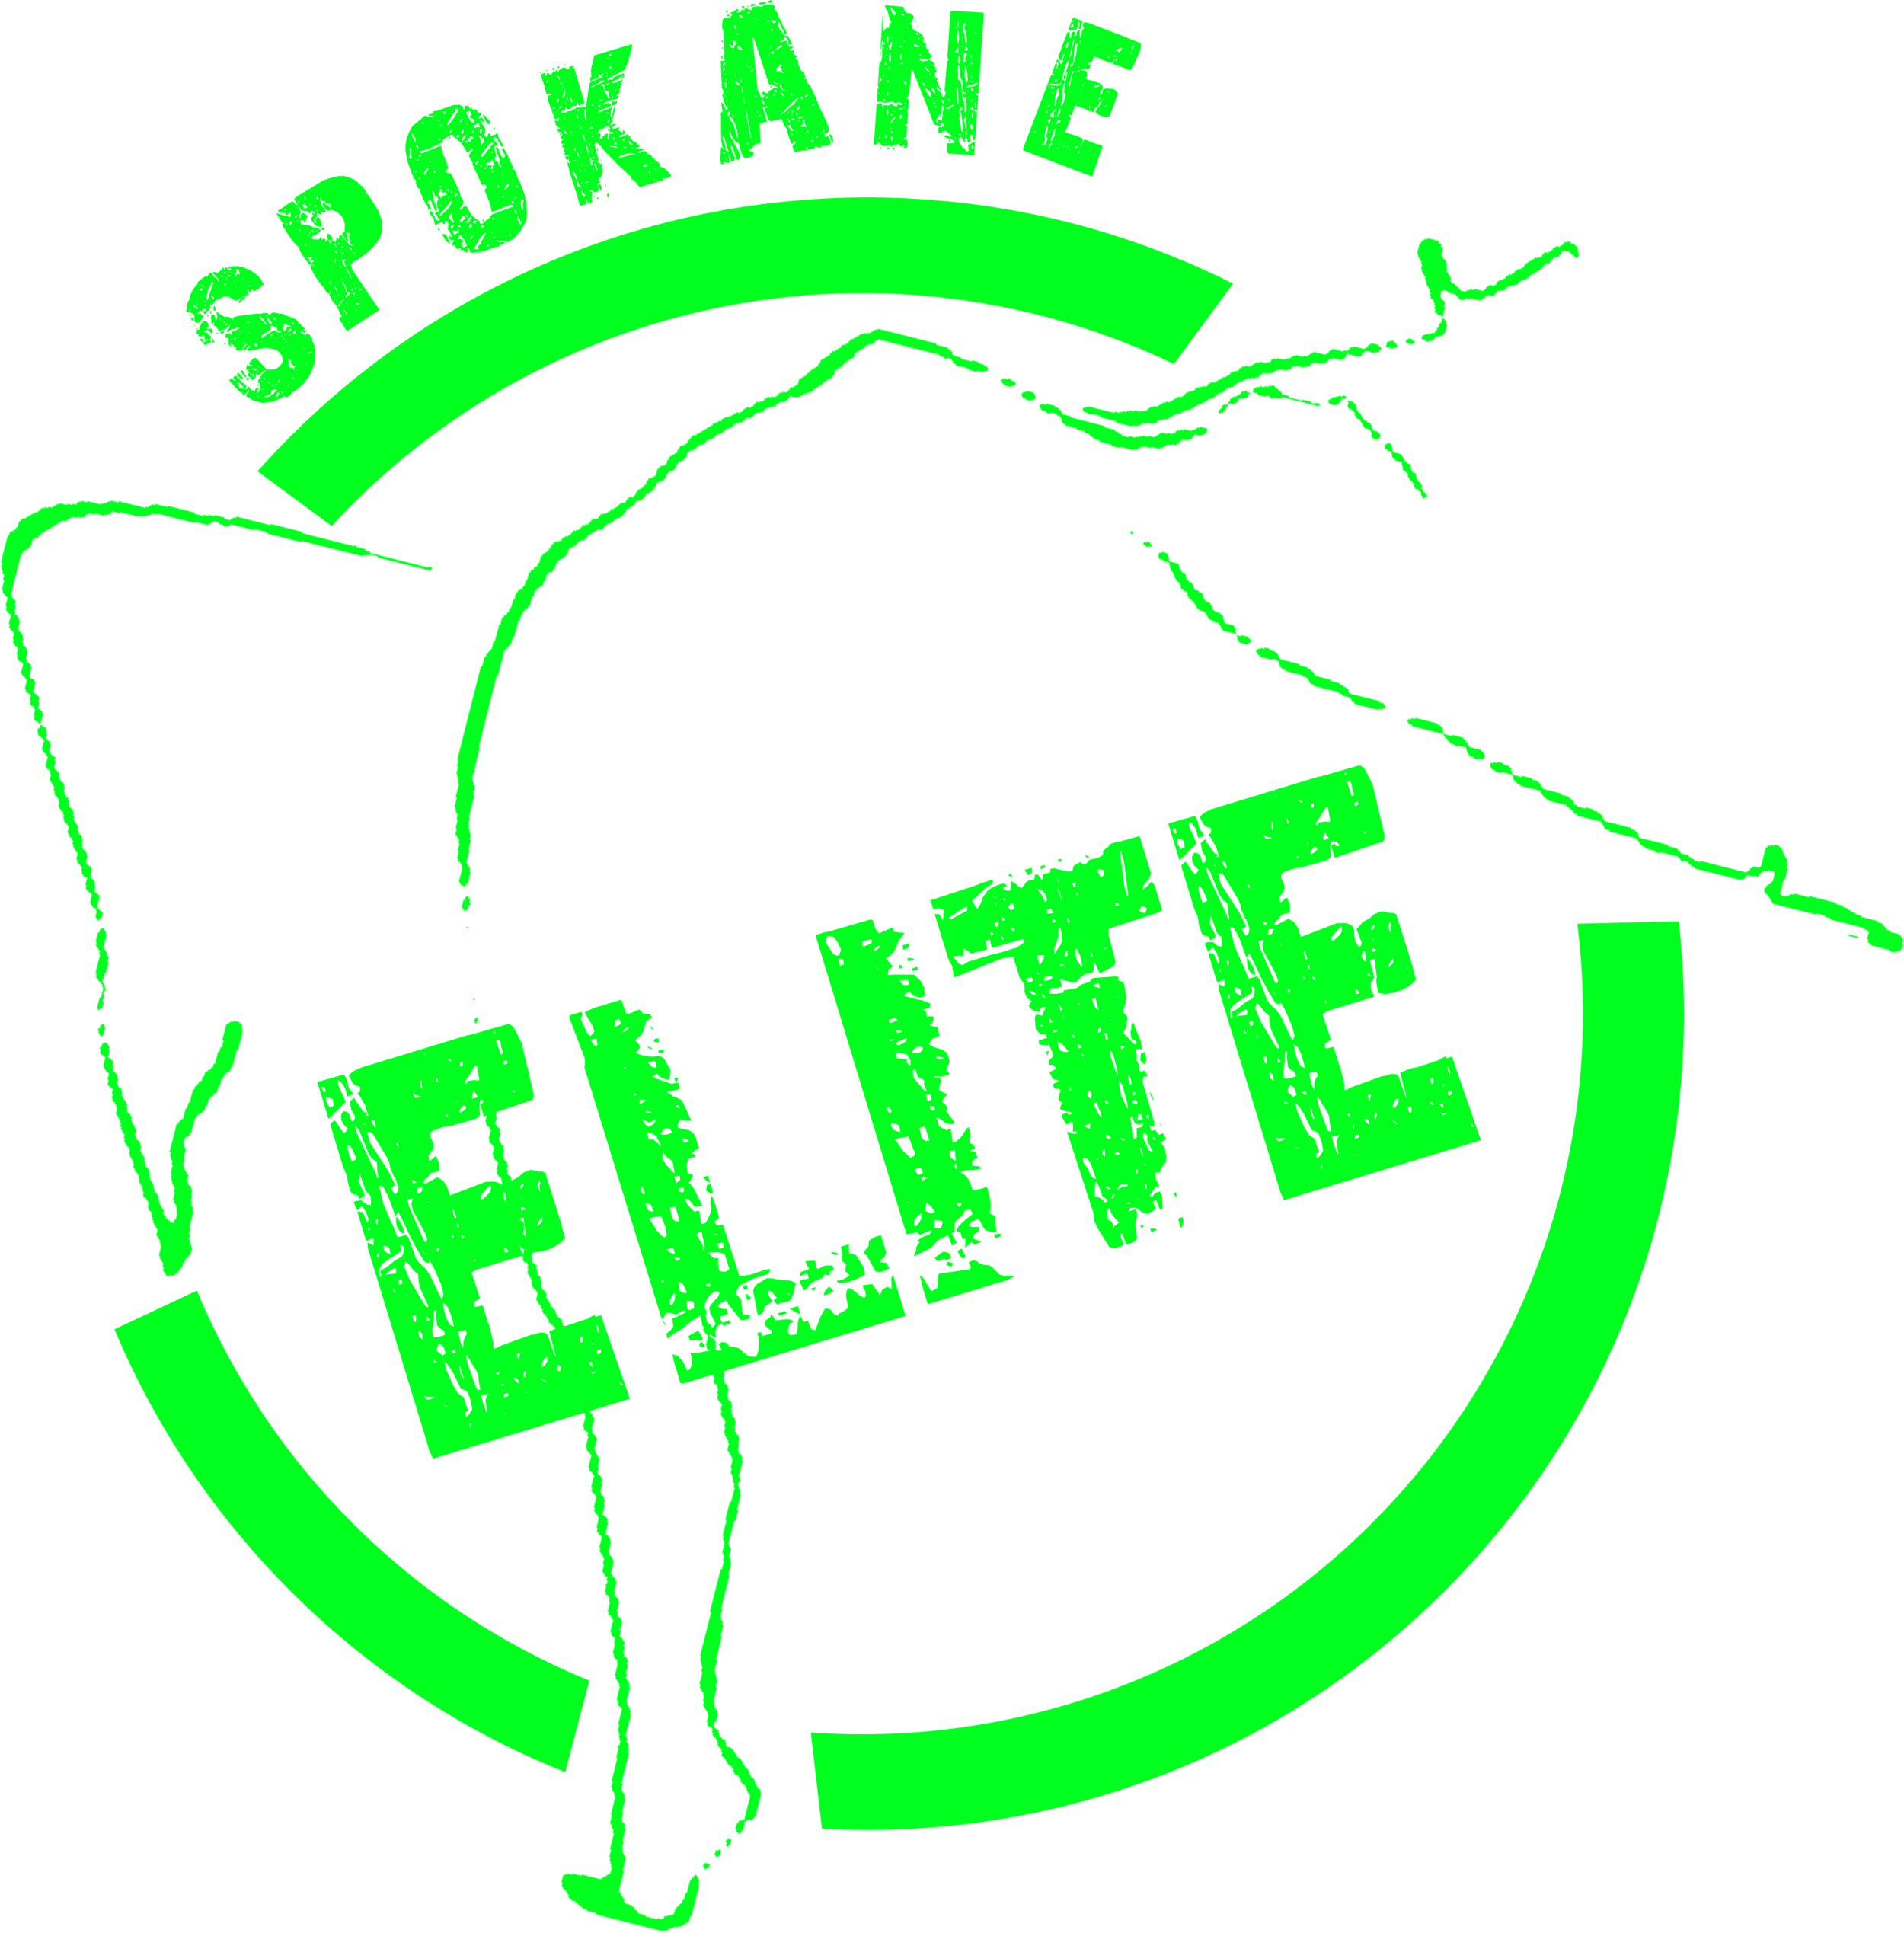 Spokane Elite Dance Studio